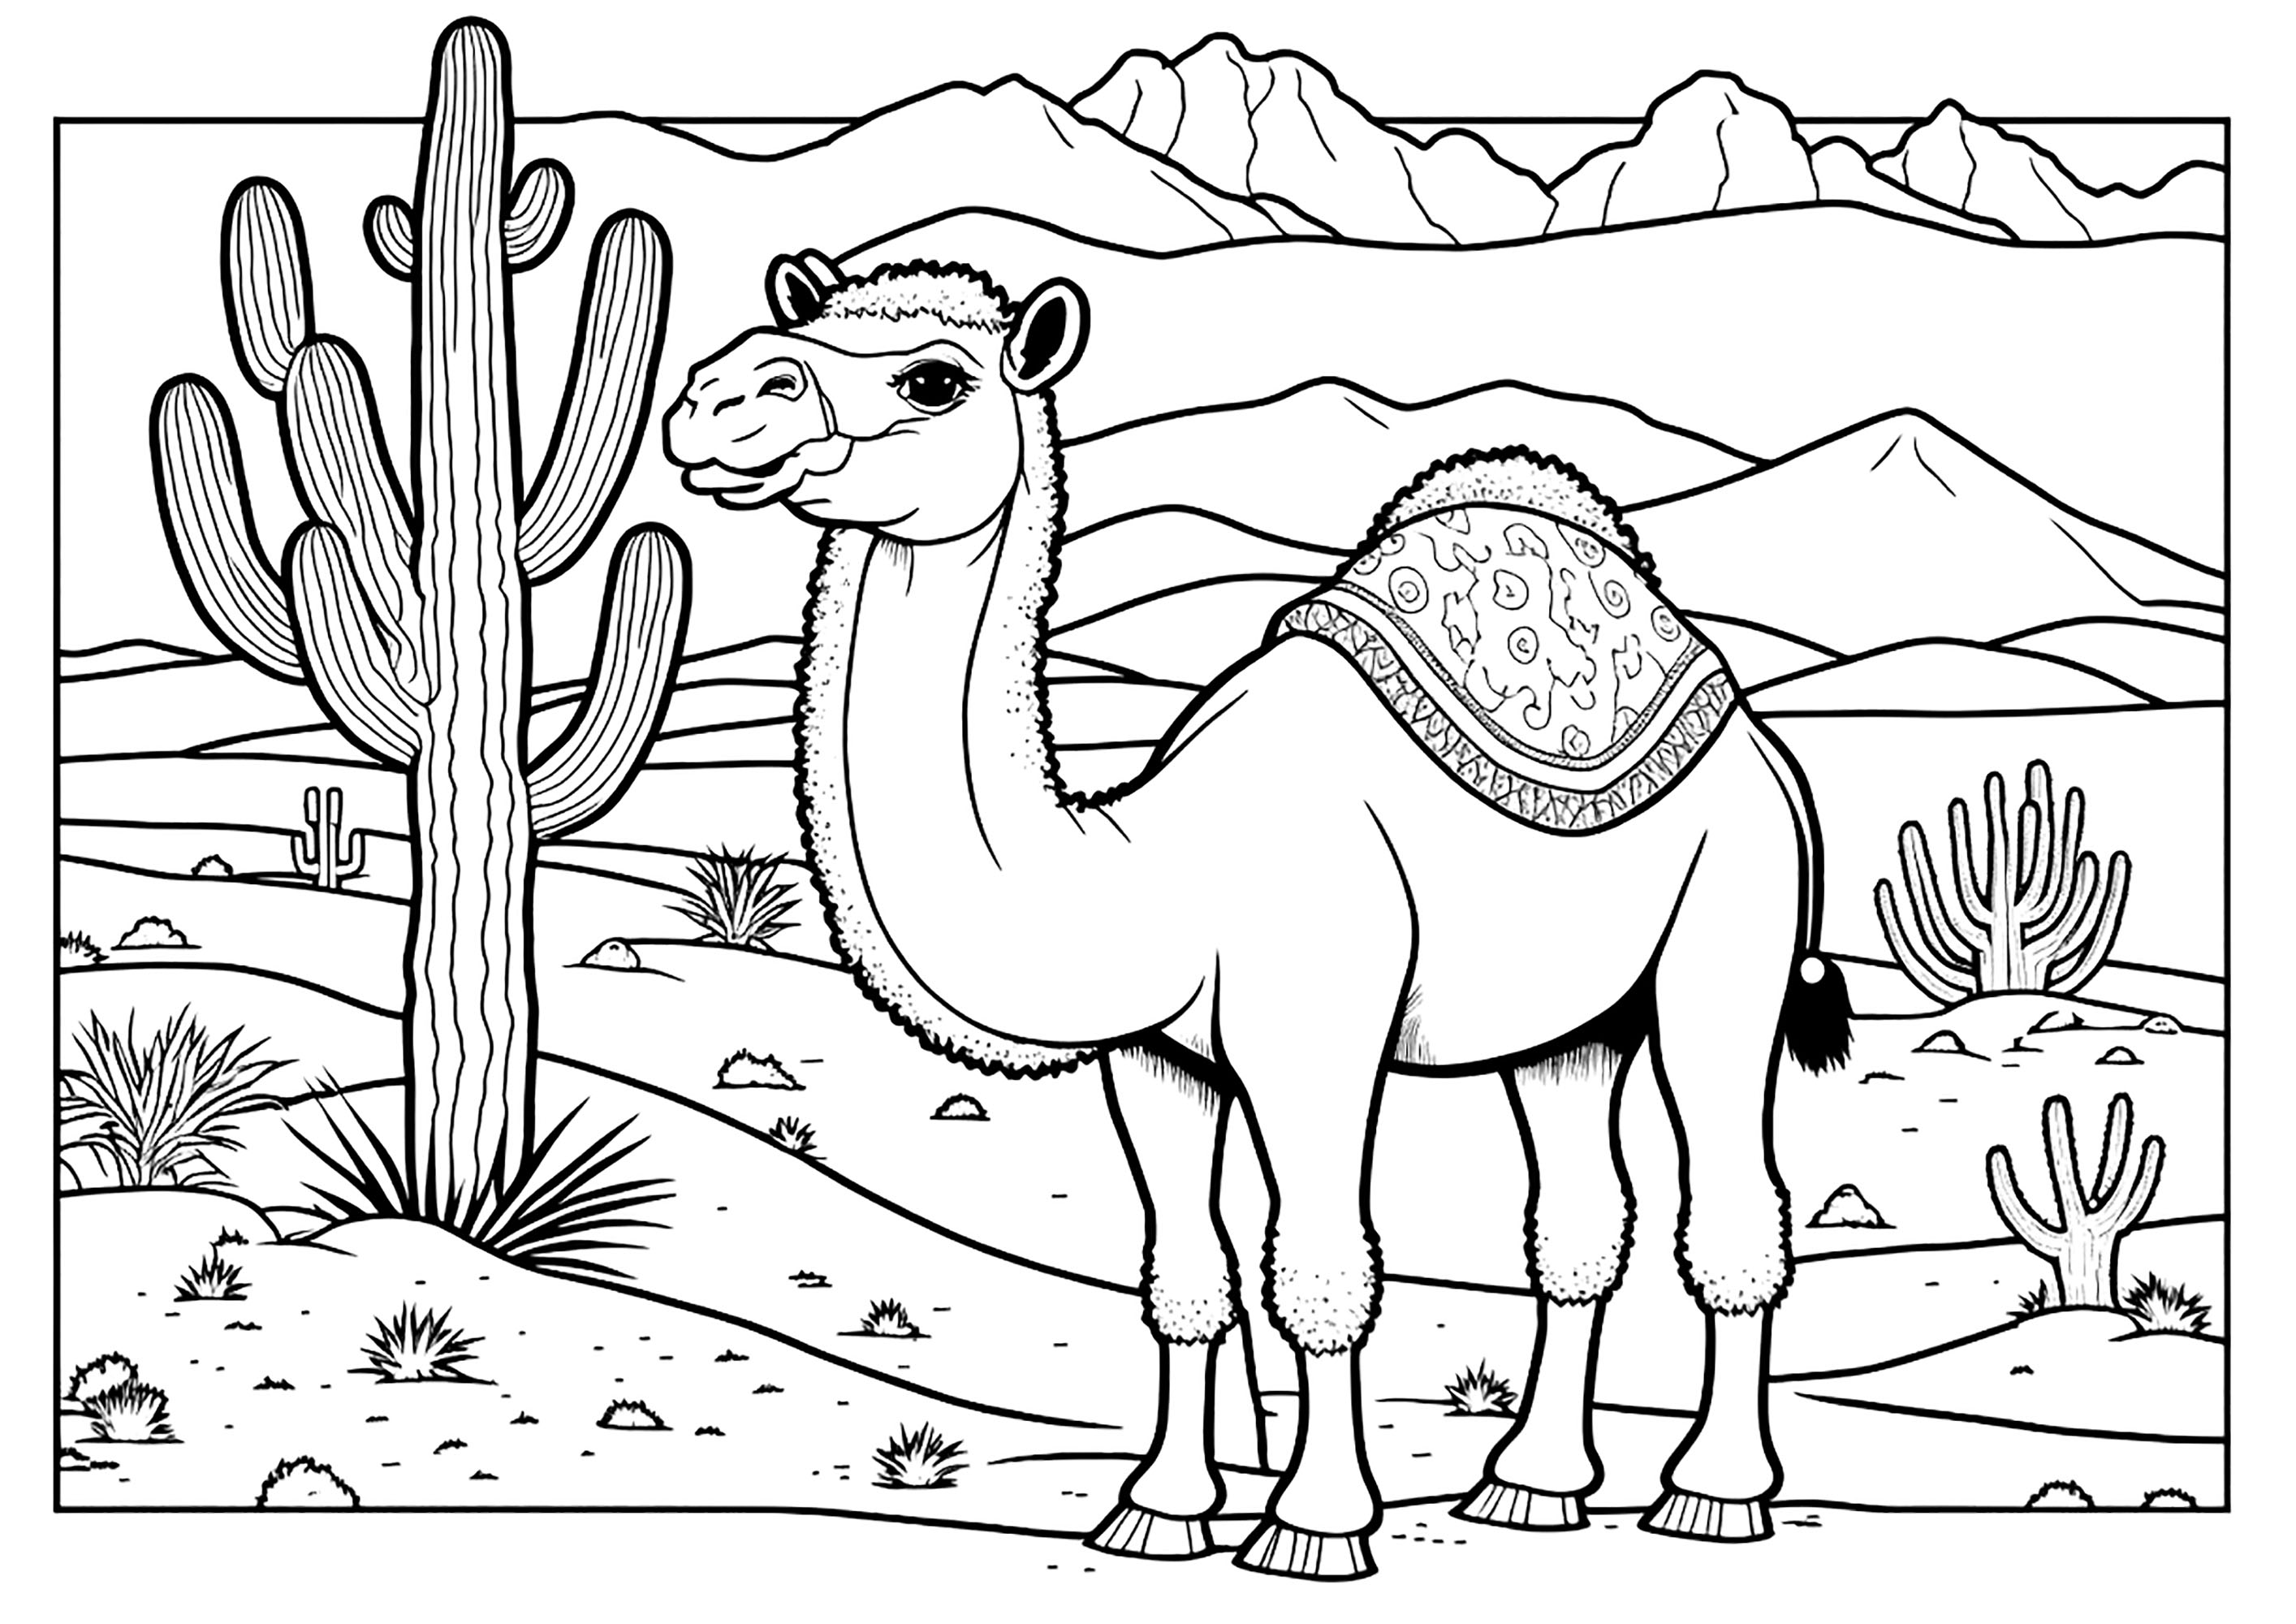 Dromedário no deserto, com um grande cacto. Este belo camelo está de pé sobre a areia quente, com as suas longas pernas e pescoço alongado. As dunas e montanhas de areia podem ser vistas ao fundo. Um grande cacto ergue-se majestosamente à esquerda do camelo.